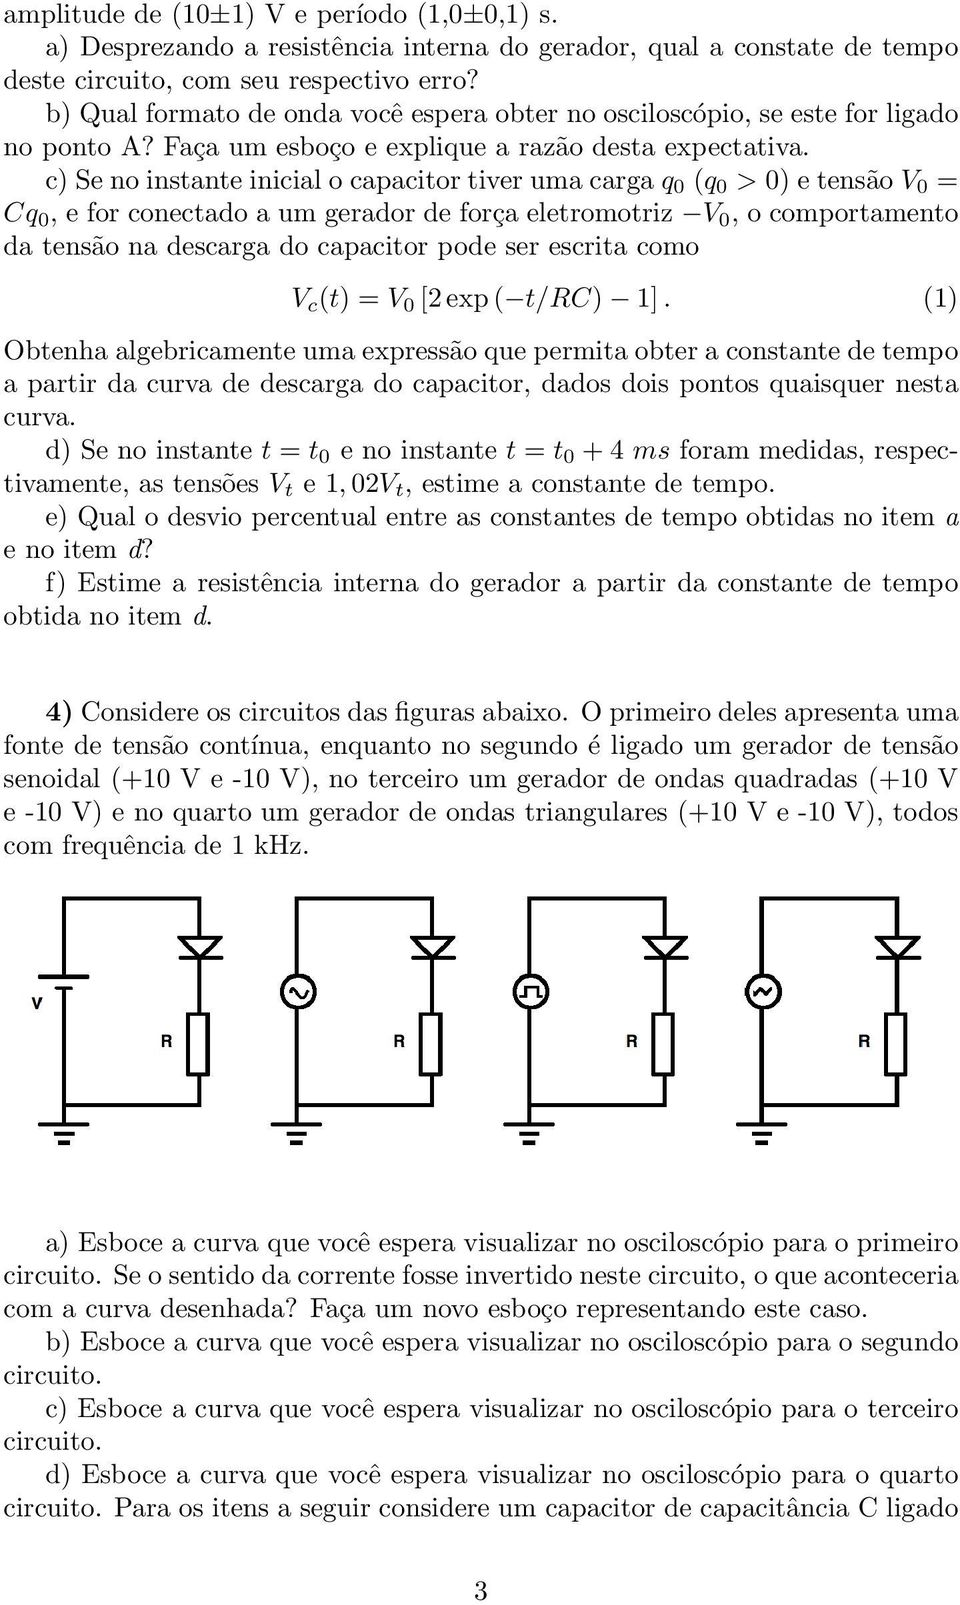 c) Se no instante inicial o capacitor tiver uma carga q 0 (q 0 > 0) e tensão V 0 = Cq 0, e for conectado a um gerador de força eletromotriz V 0, o comportamento da tensão na descarga do capacitor